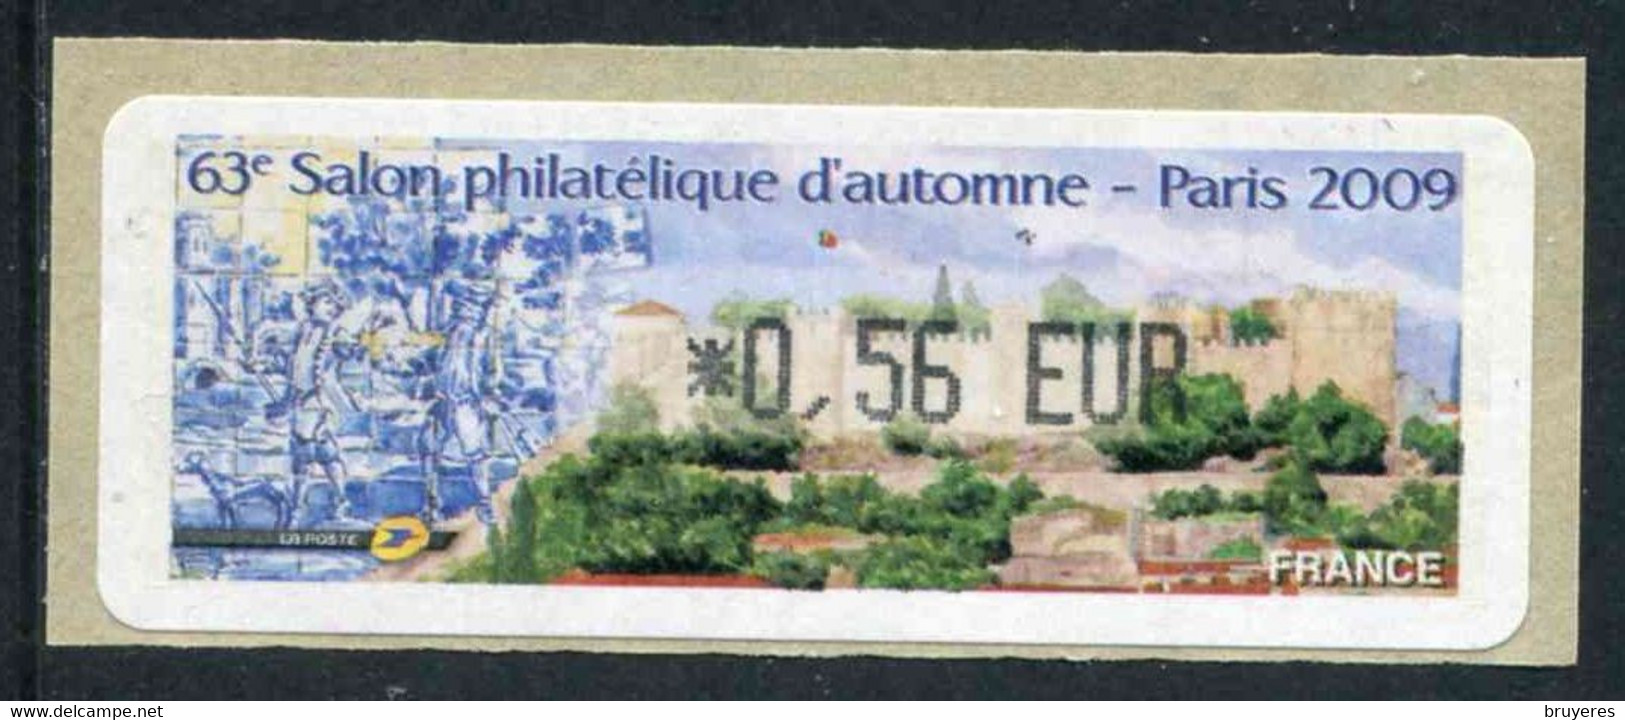 LISA 1 De 2009 - " ***0,56 EUR - 63e SALON PHILATELIQUE D'AUTOMNE - PARIS 2009 - Illustration : LISBONNE" - 1999-2009 Illustrated Franking Labels